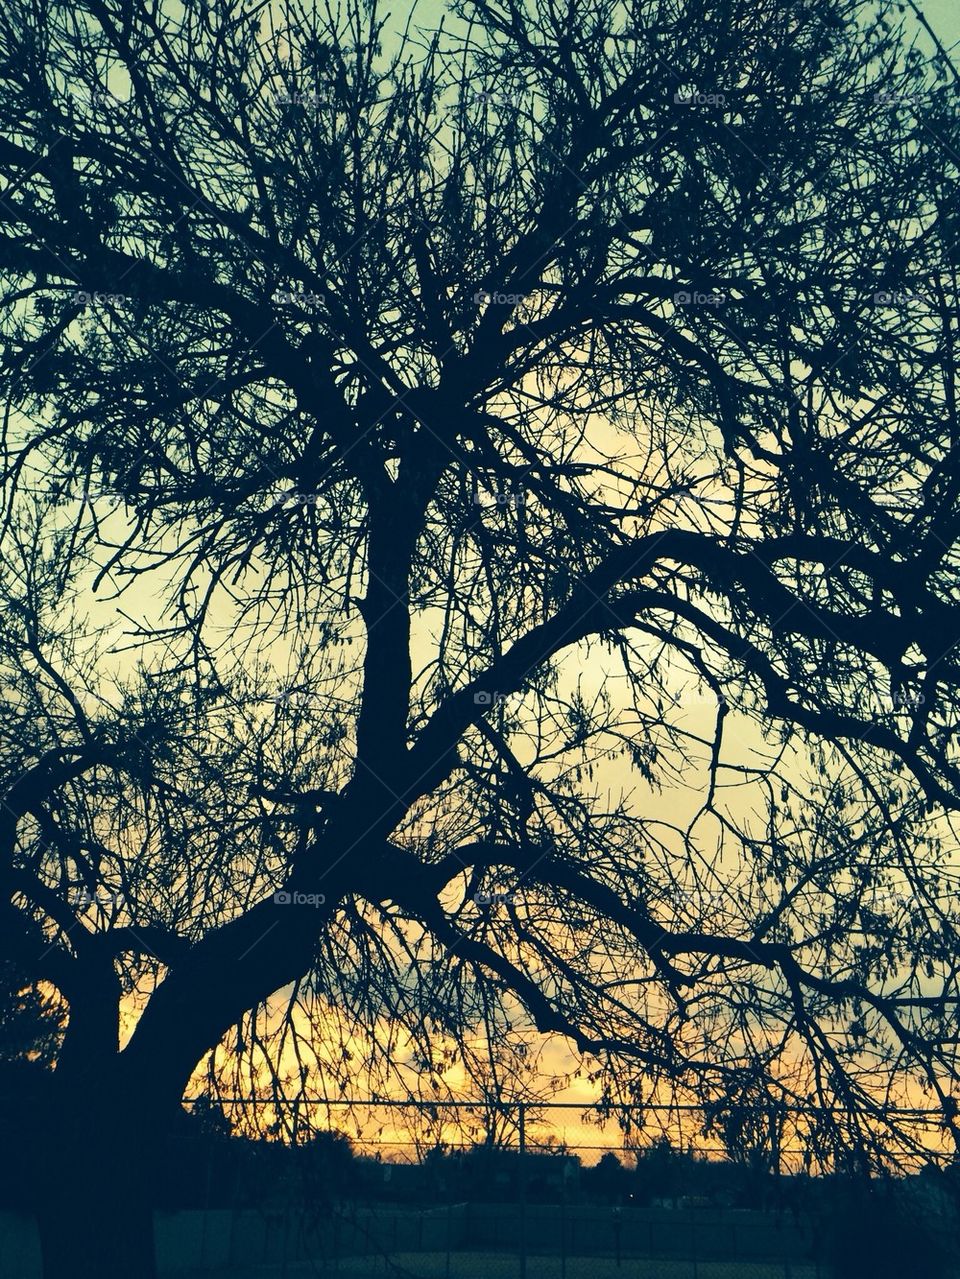 December sunset in Tulsa, OK